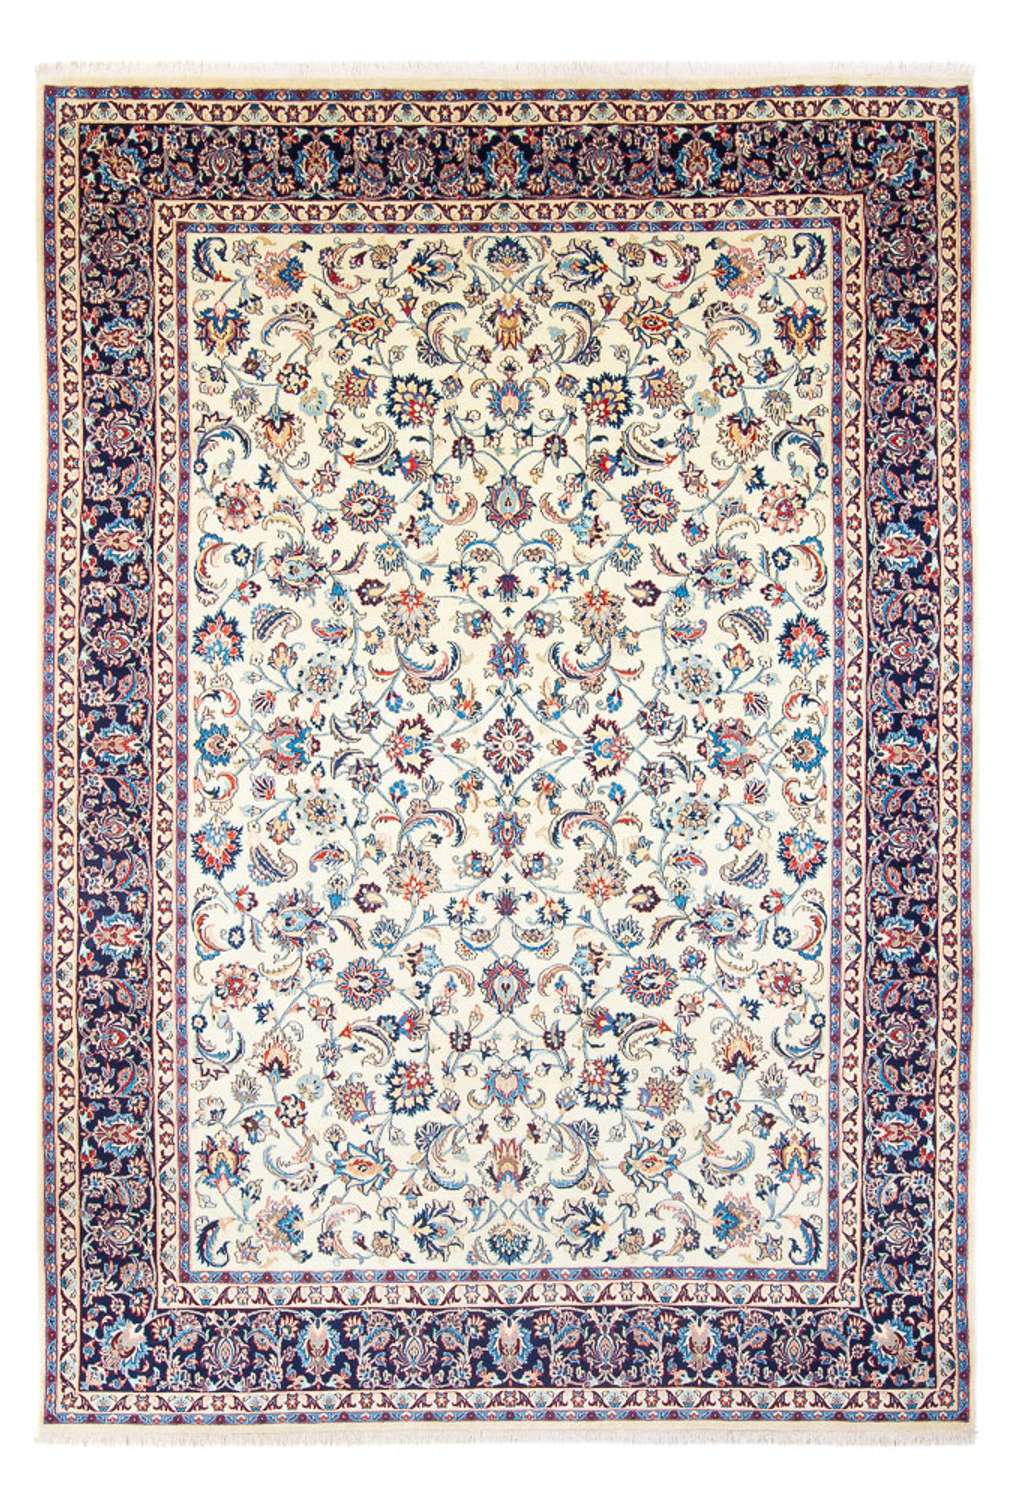 Alfombra persa - Clásica - 357 x 245 cm - multicolor